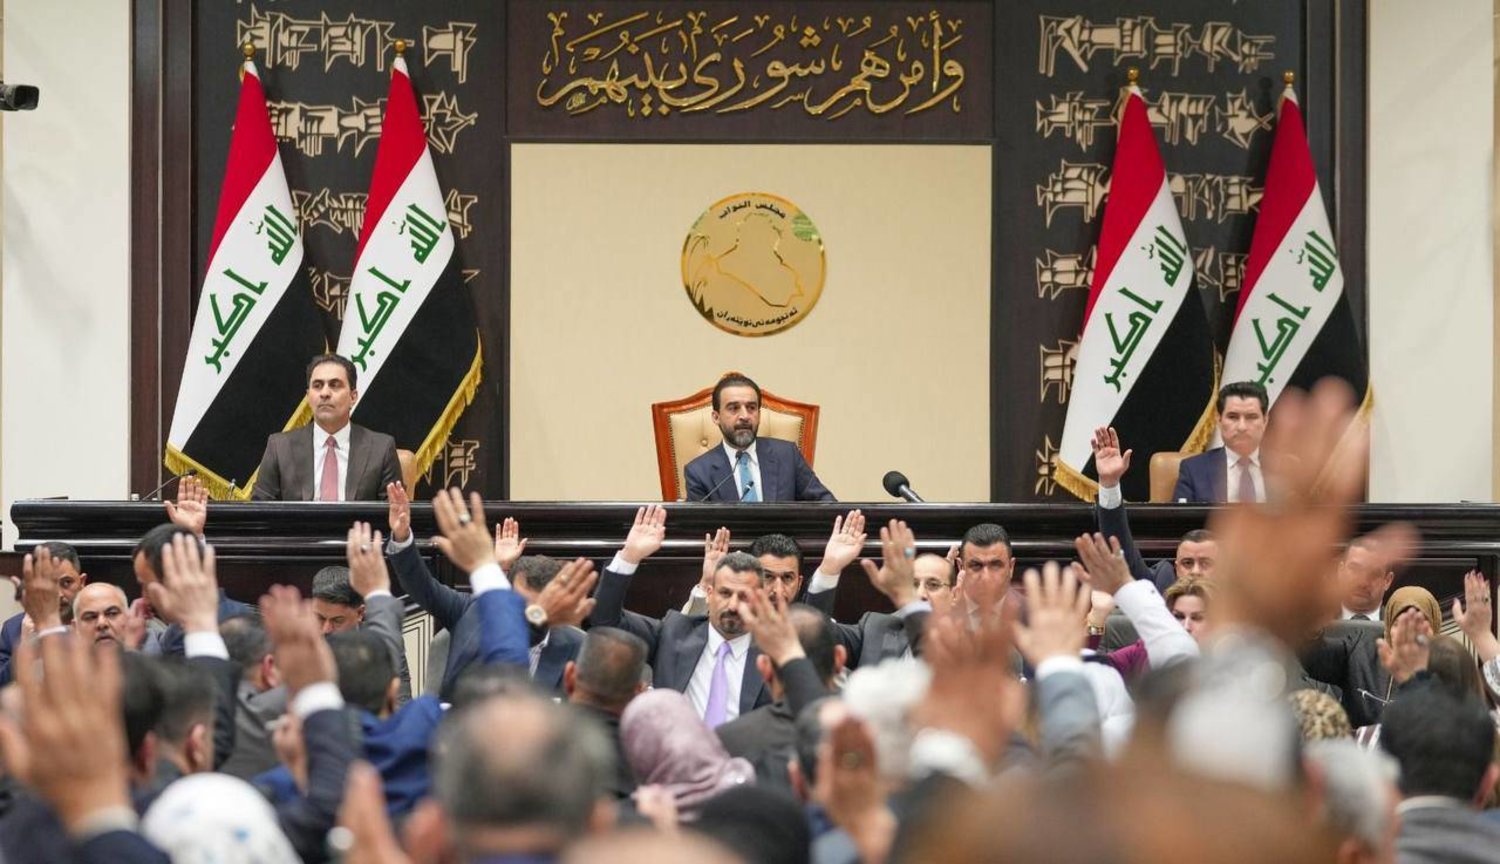 صورة نشرها موقع مجلس النواب العراقي من جلسة التصويت على مشروع قانون الموازنة العامة أمس